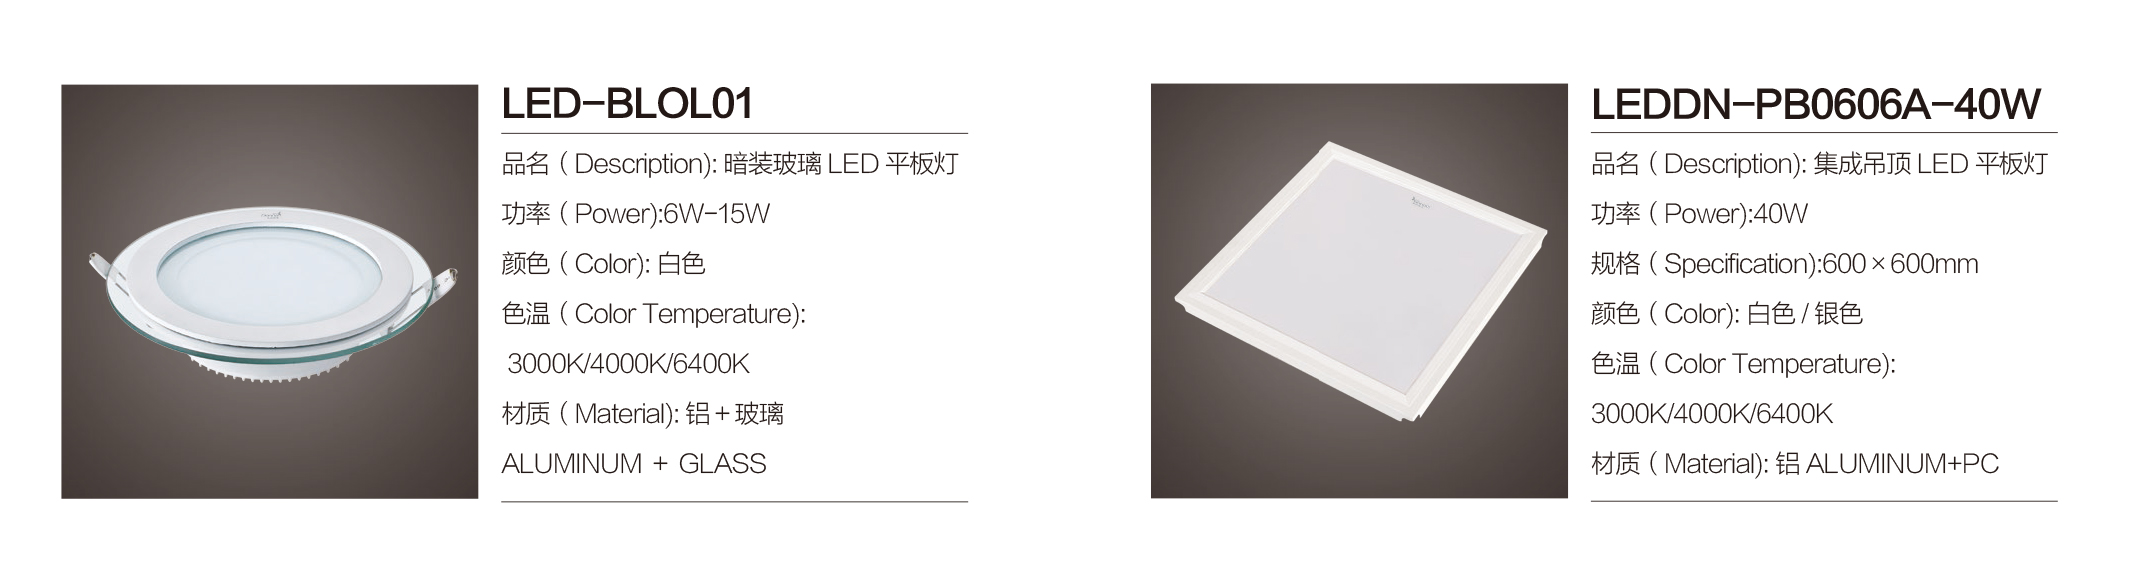 LED-BLOL01-6W-15W|平板灯-佛山市南海区东南灯饰照明有限公司